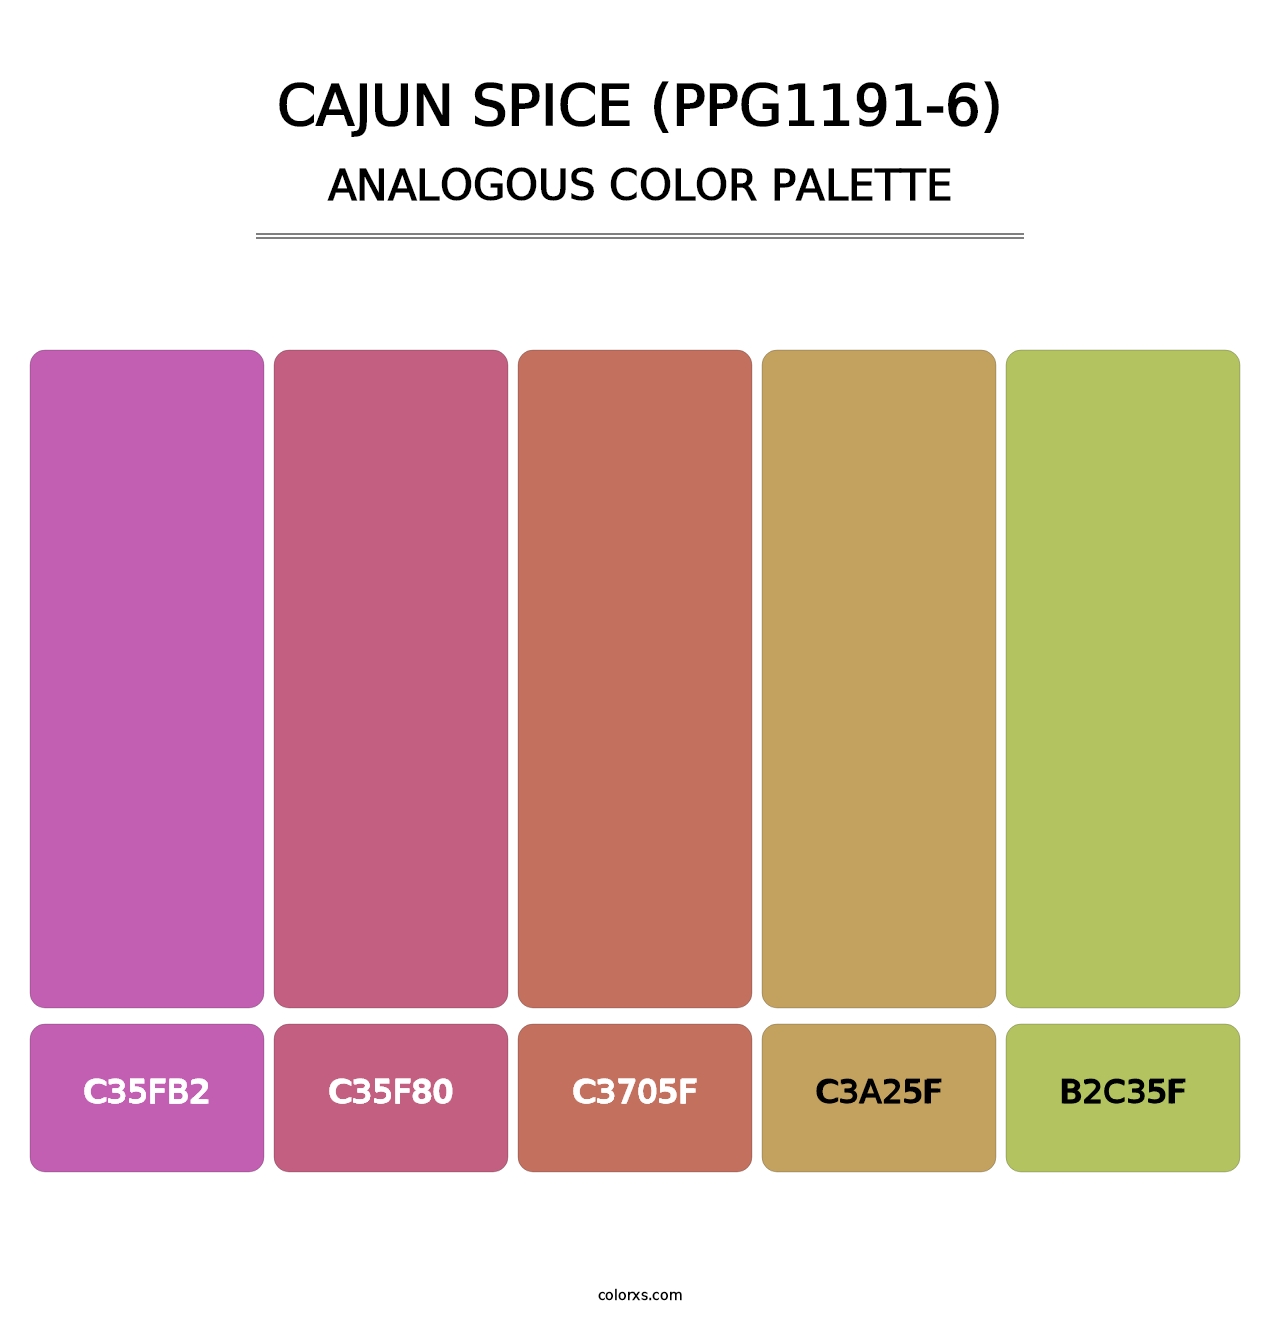 Cajun Spice (PPG1191-6) - Analogous Color Palette